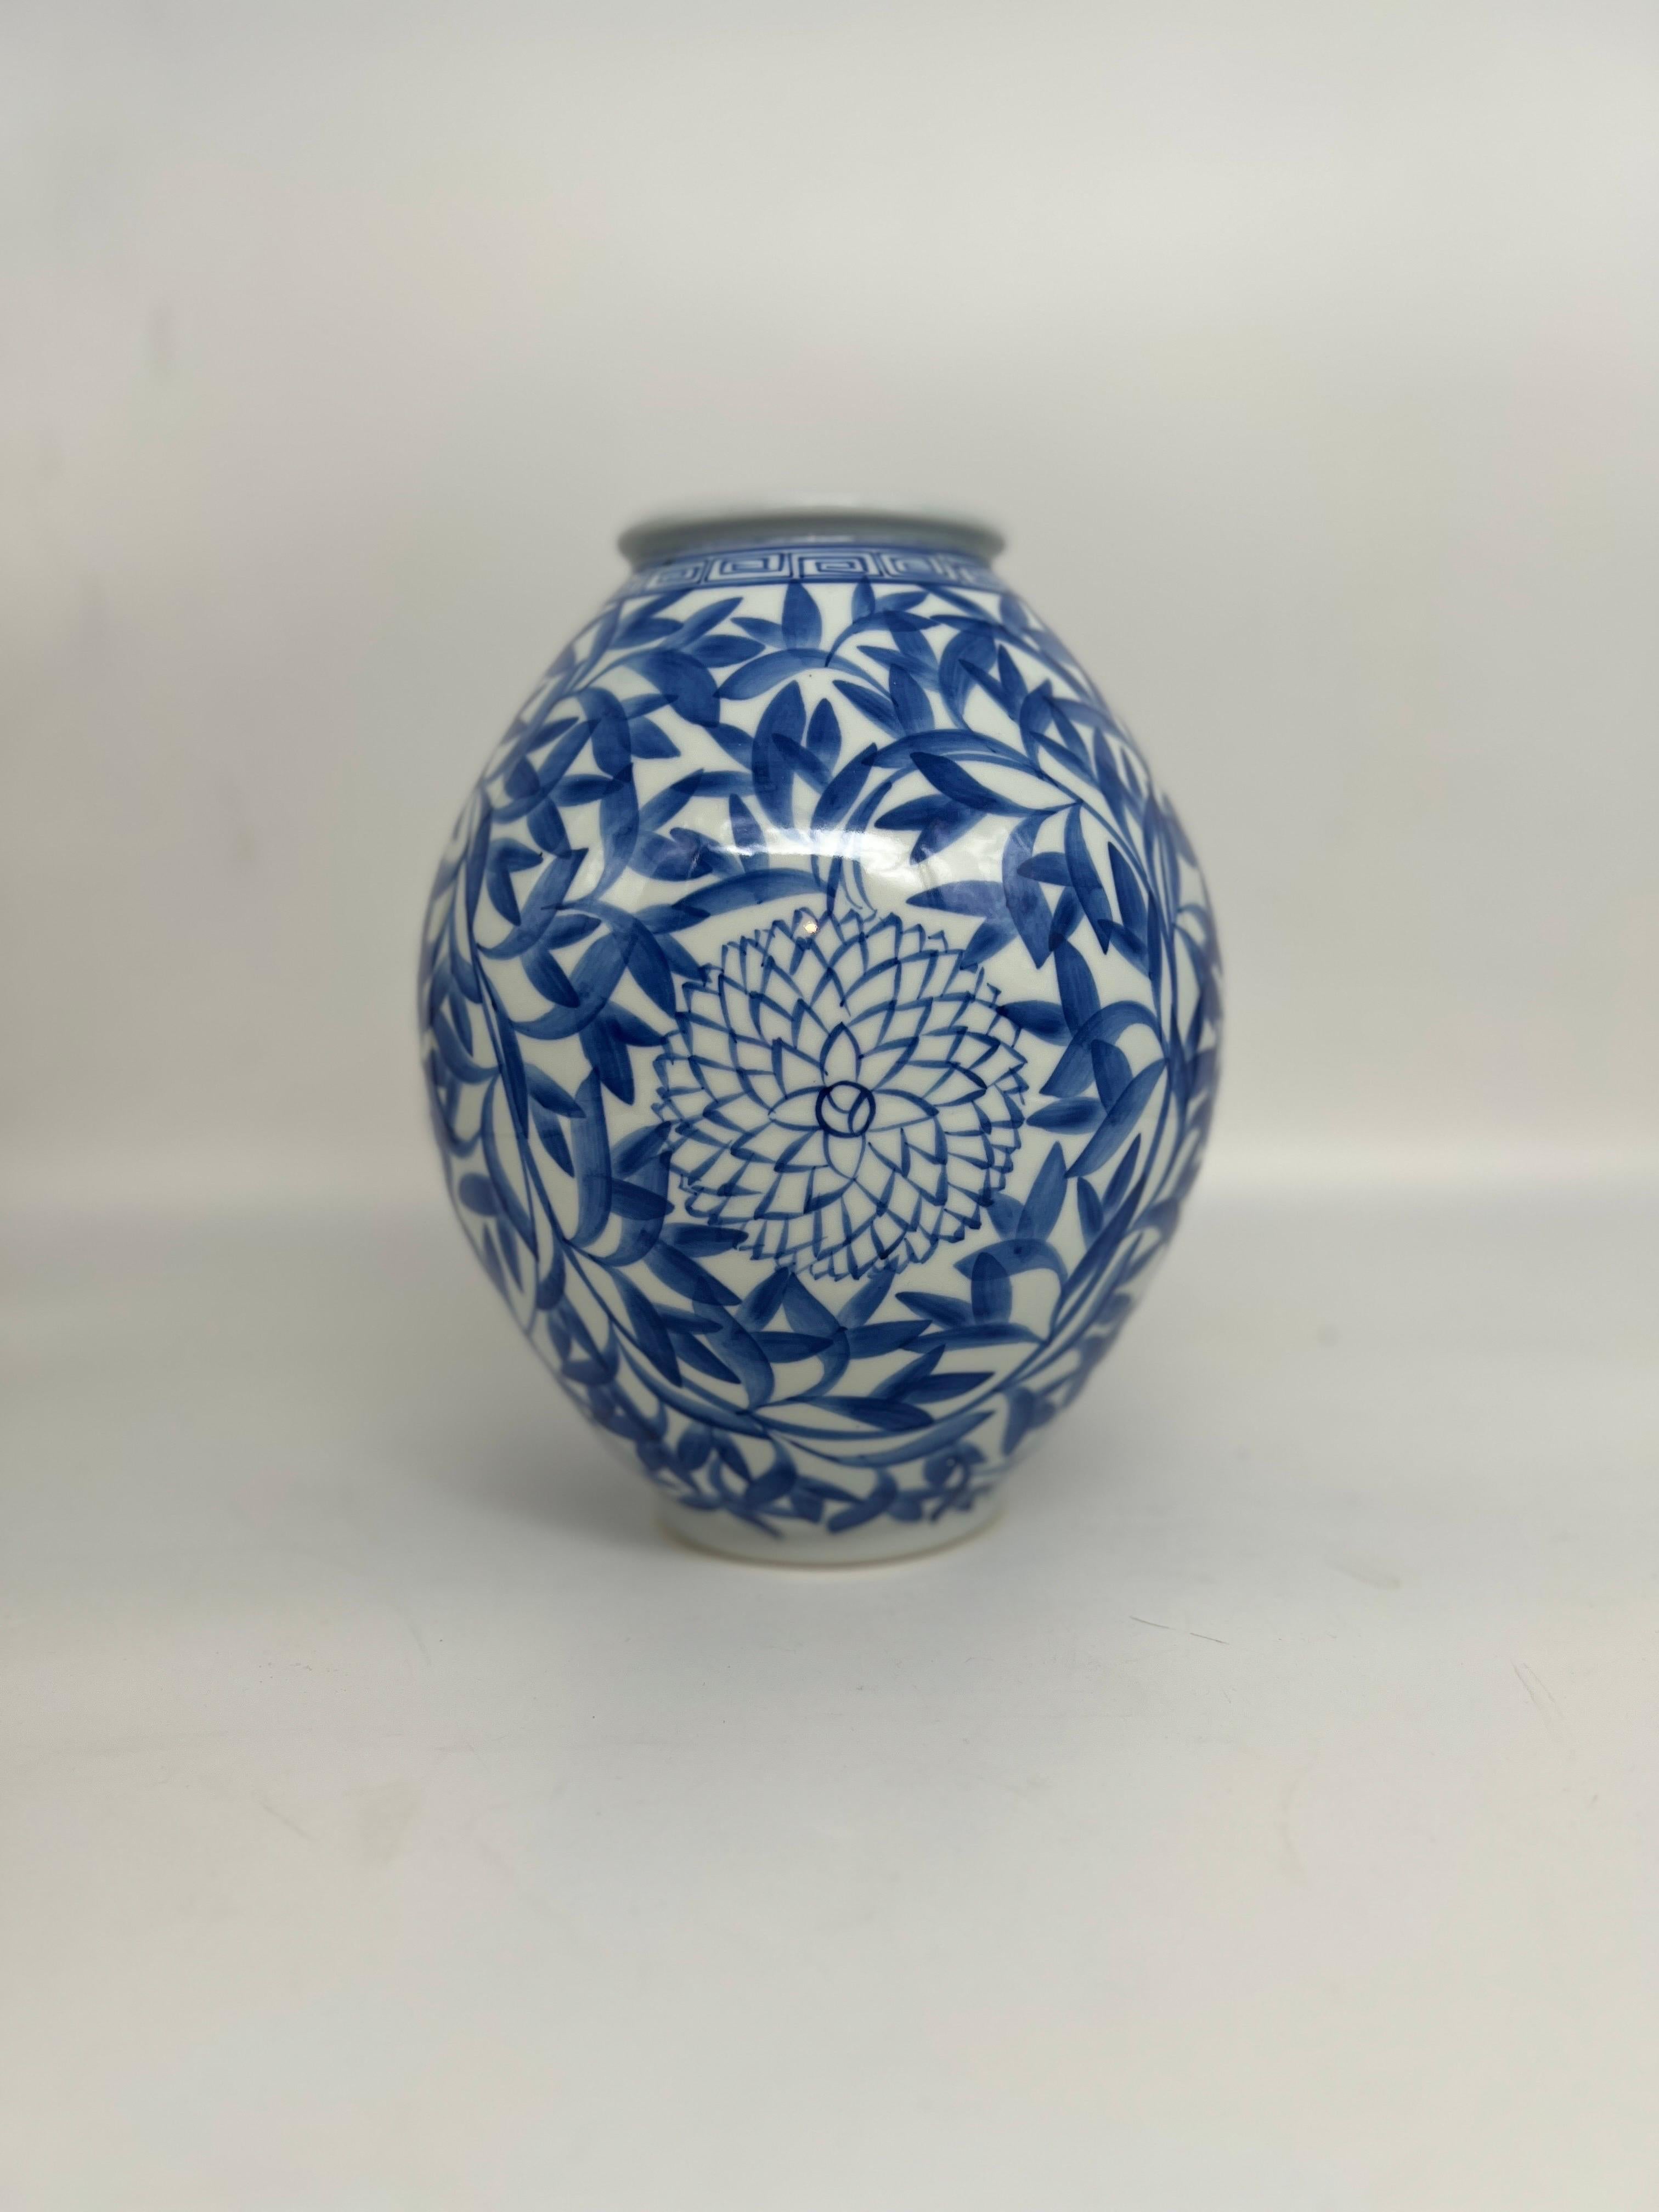 Vintage Japanese Blue and White Floral Bamboo Decorated Vase, signiert auf der Unterseite aus der Matsuiwa Region von Japan.